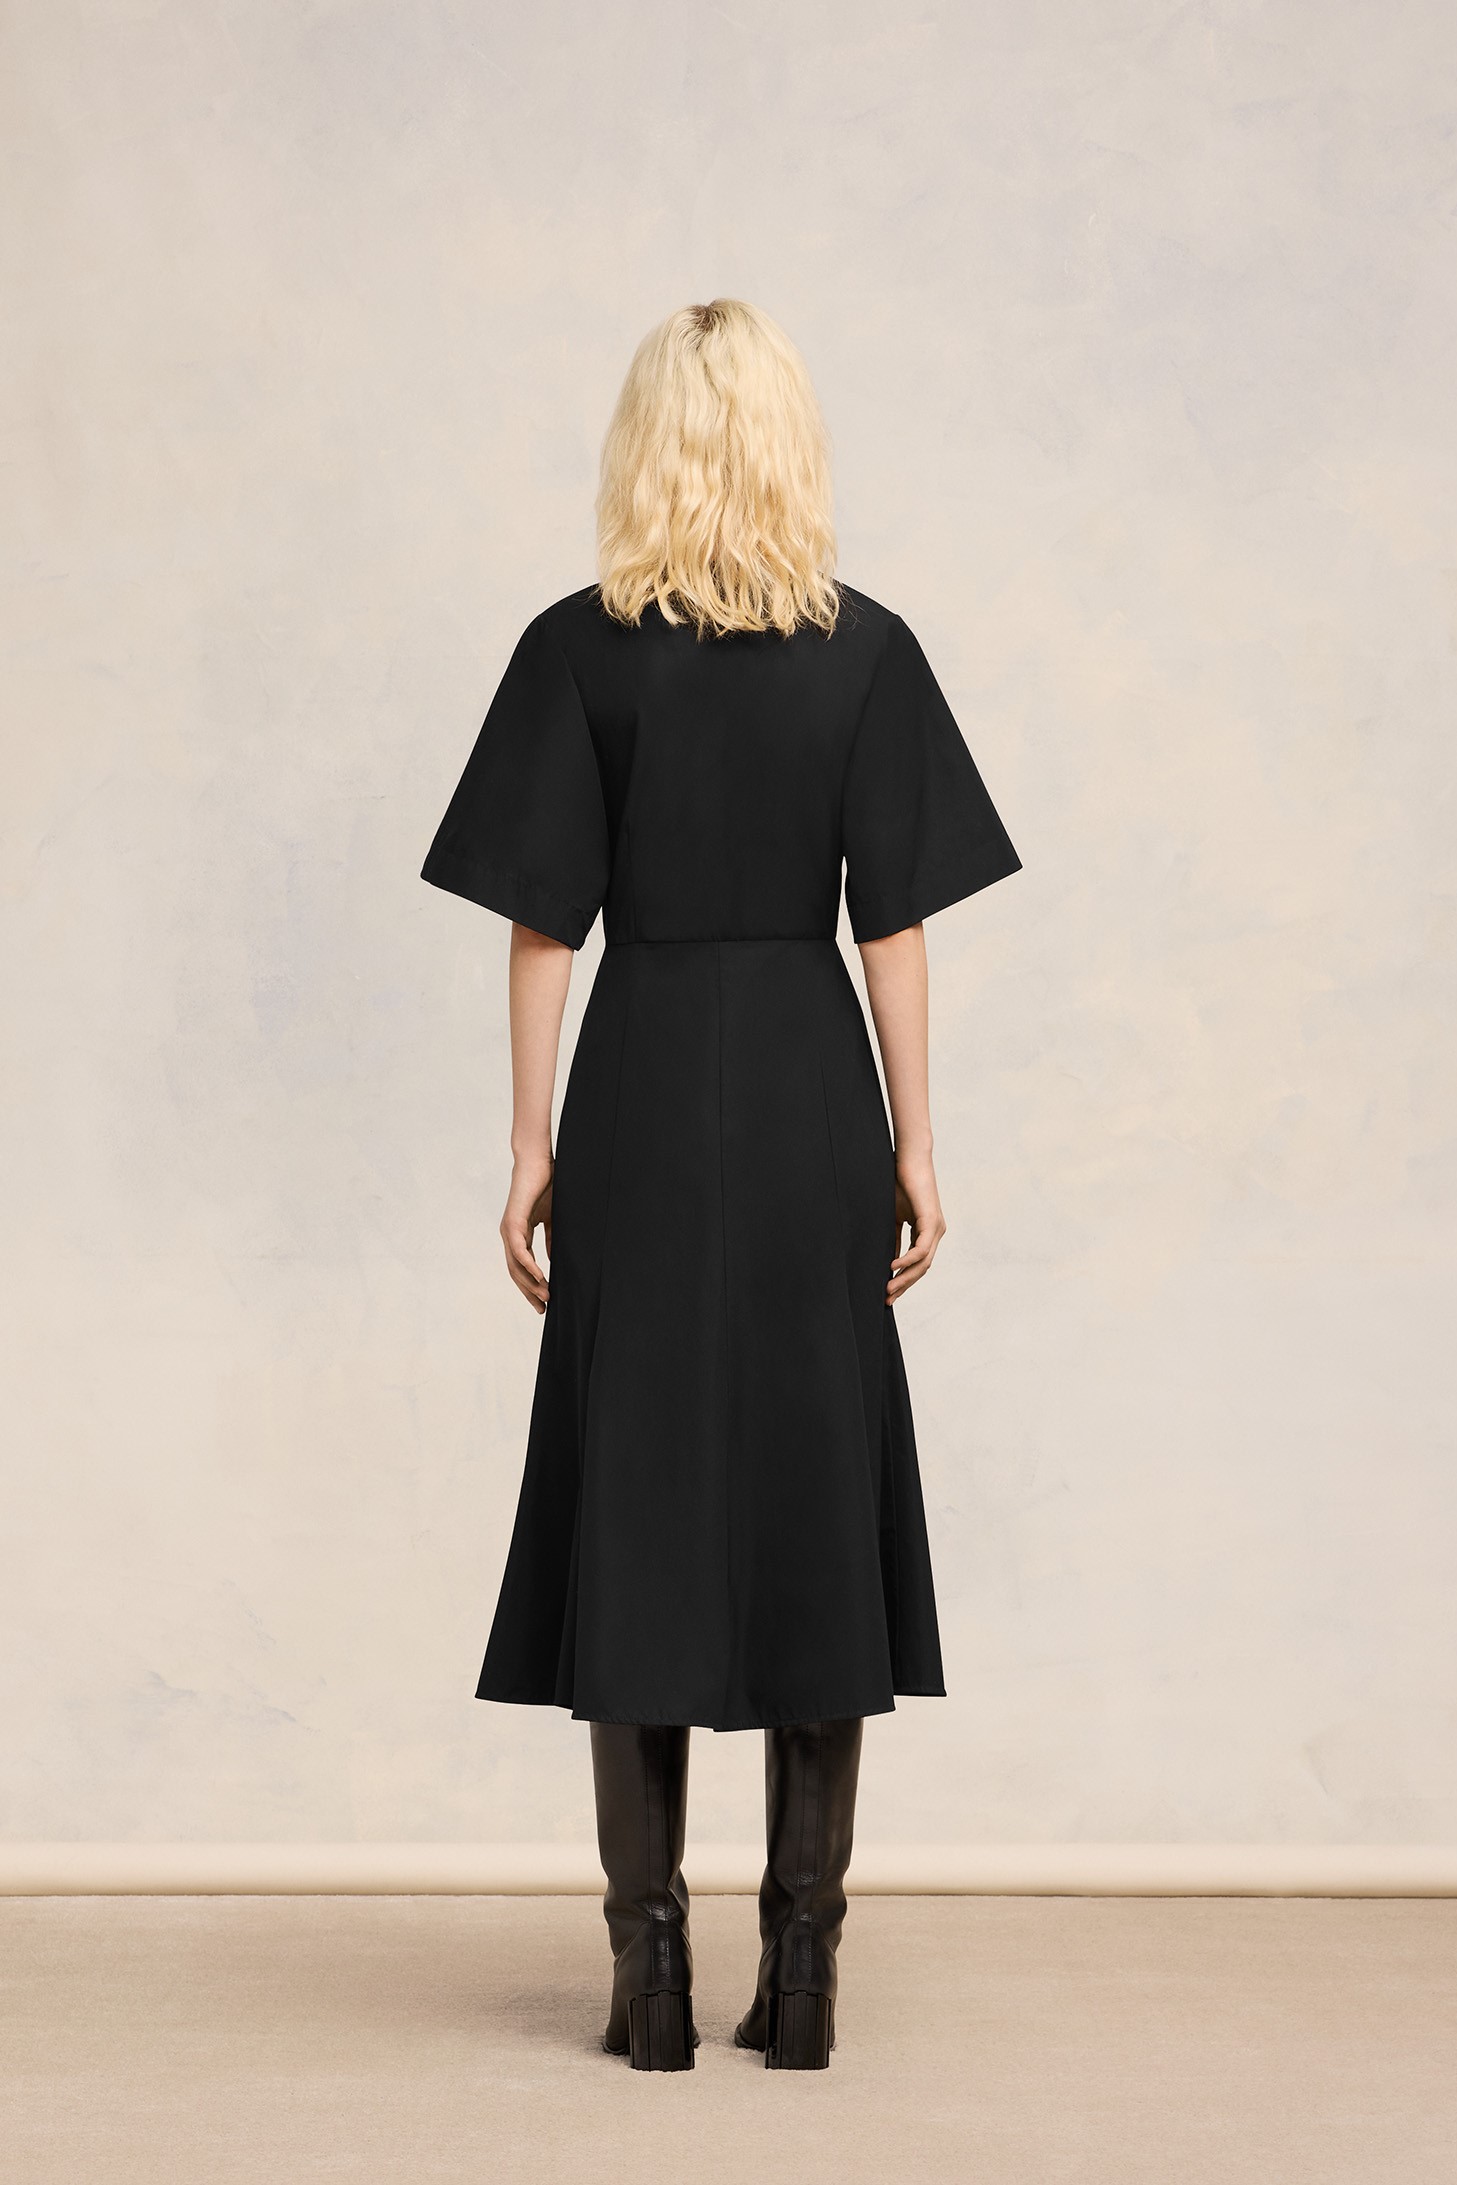 AMI PARIS Midi Dress in Black FR36 / DE34